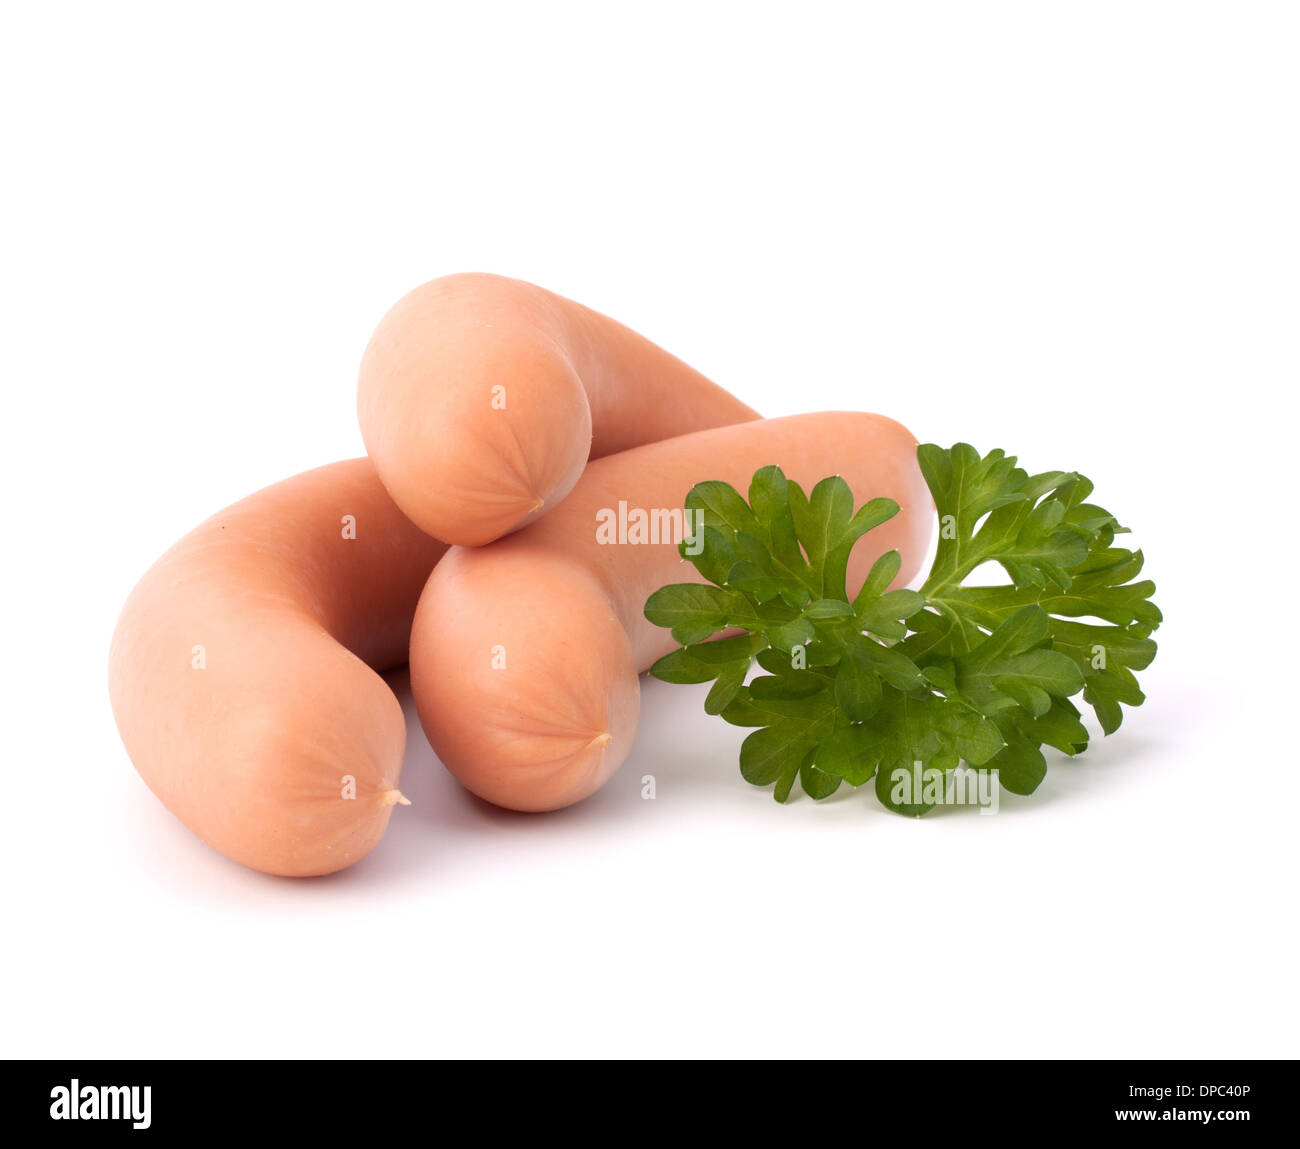 Frankfurter sausage isolated on white background Stock Photo